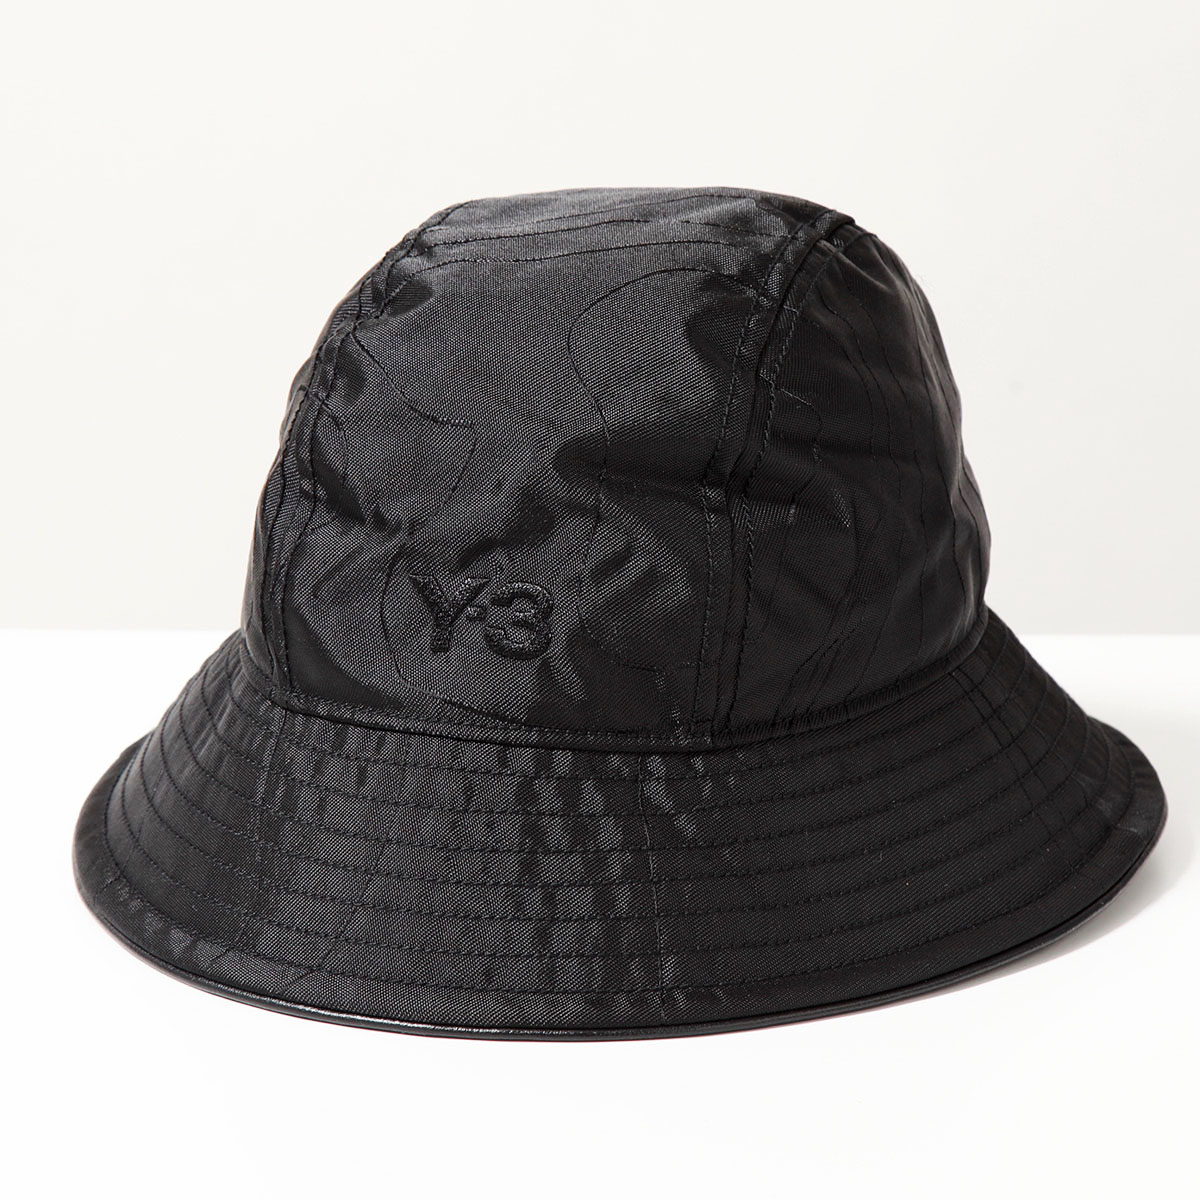 Y-3 バケットハット IS5226 メンズ ナイロン ロゴ刺繍 BLACK ワイスリー 帽子